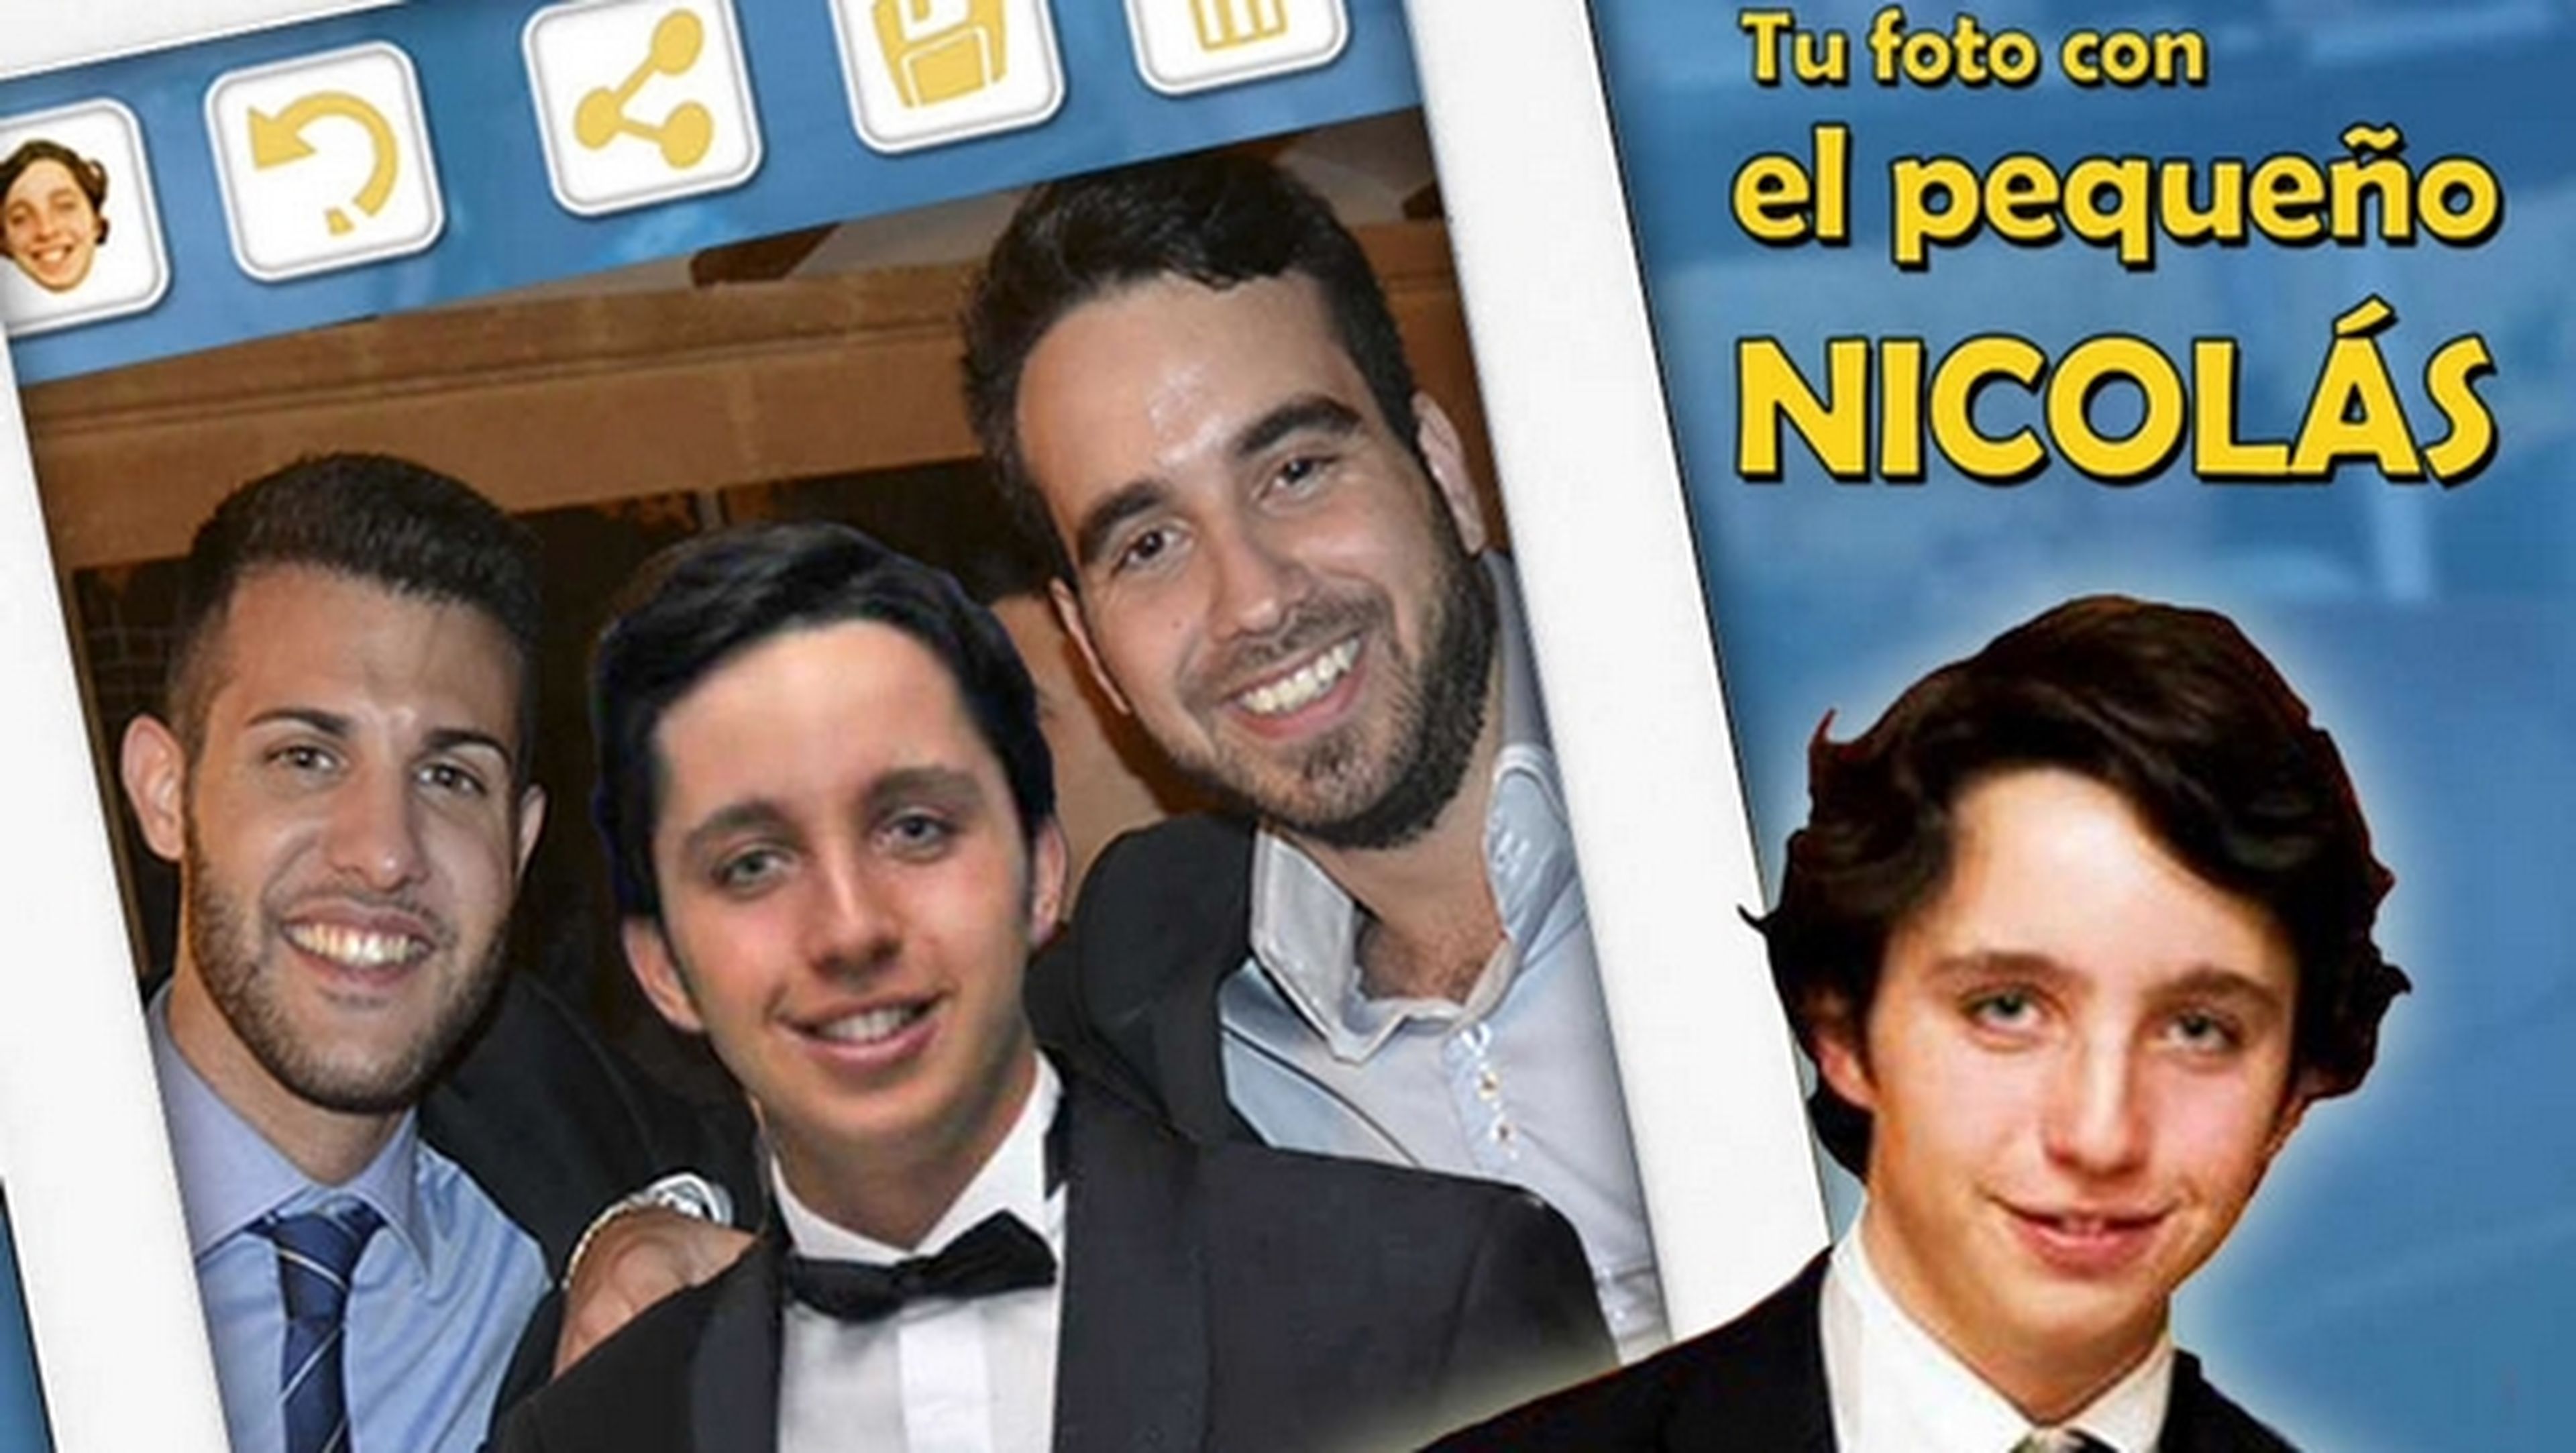 Hazte un selfie con el pequeño Nicolás con la app para iOS y Android Tu Foto con el Pequeño Nicolás.